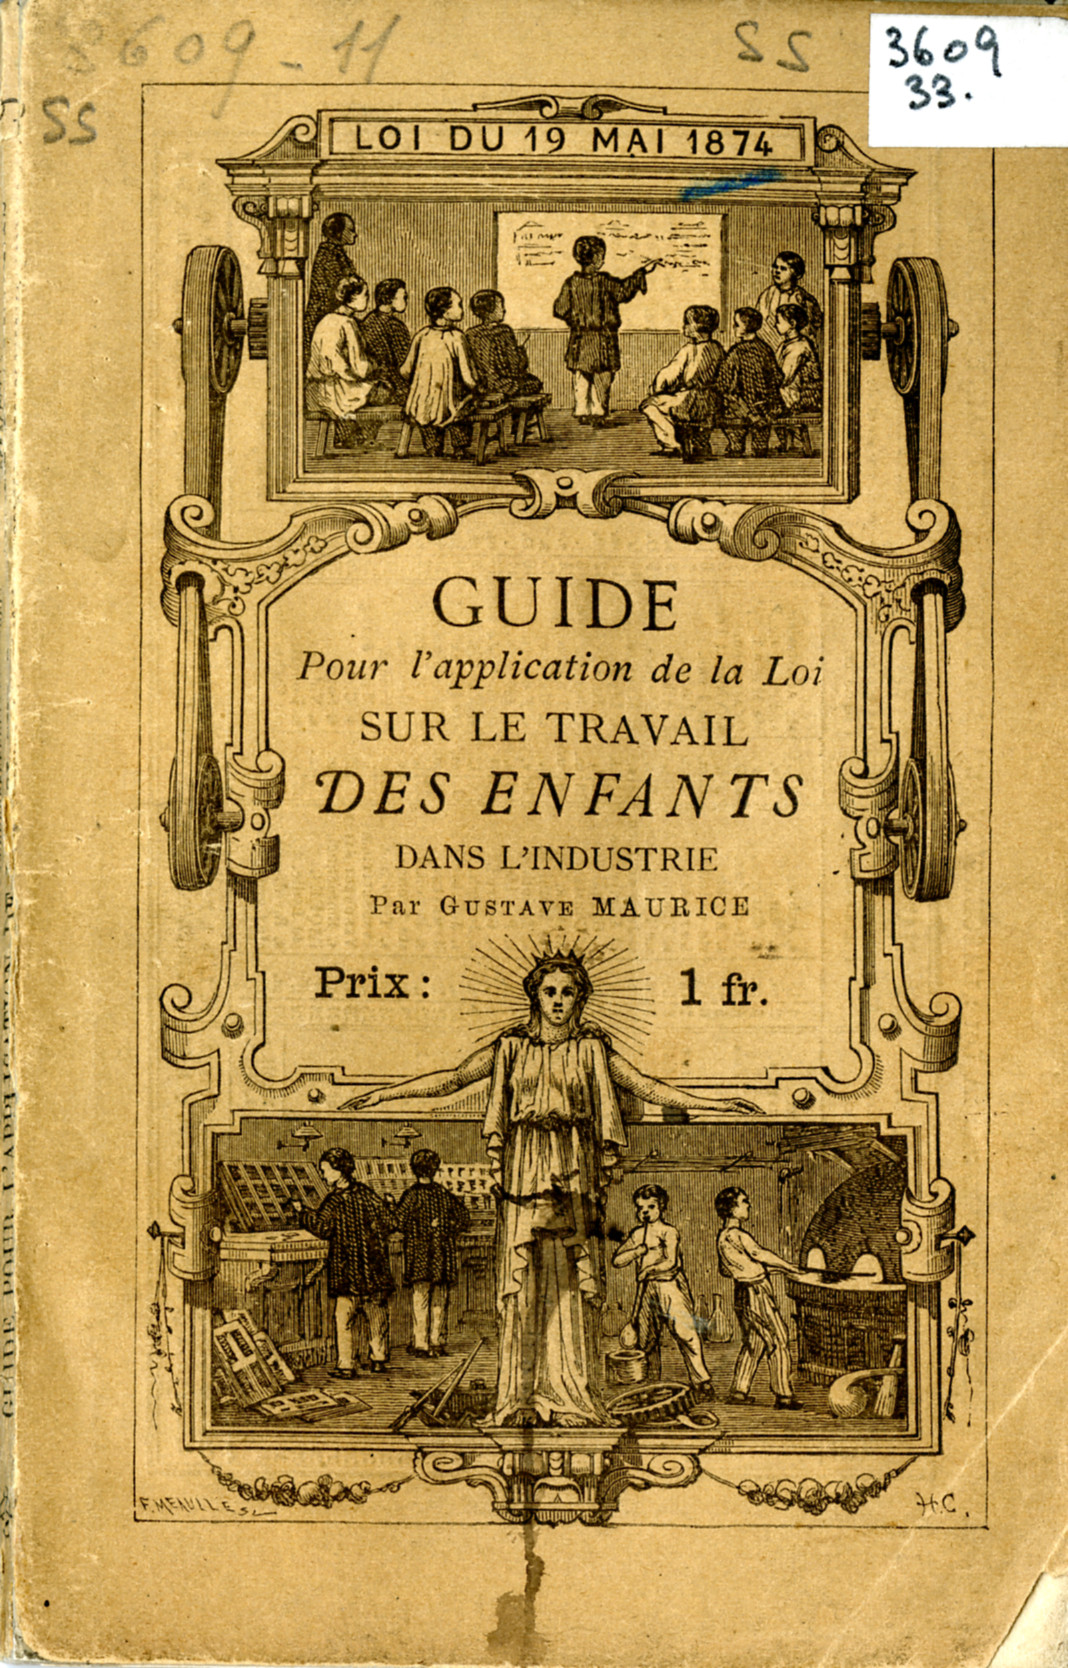 reproduction du guide de 1874 pour l'application de la loi sur le travail des enfants dans l'industrie